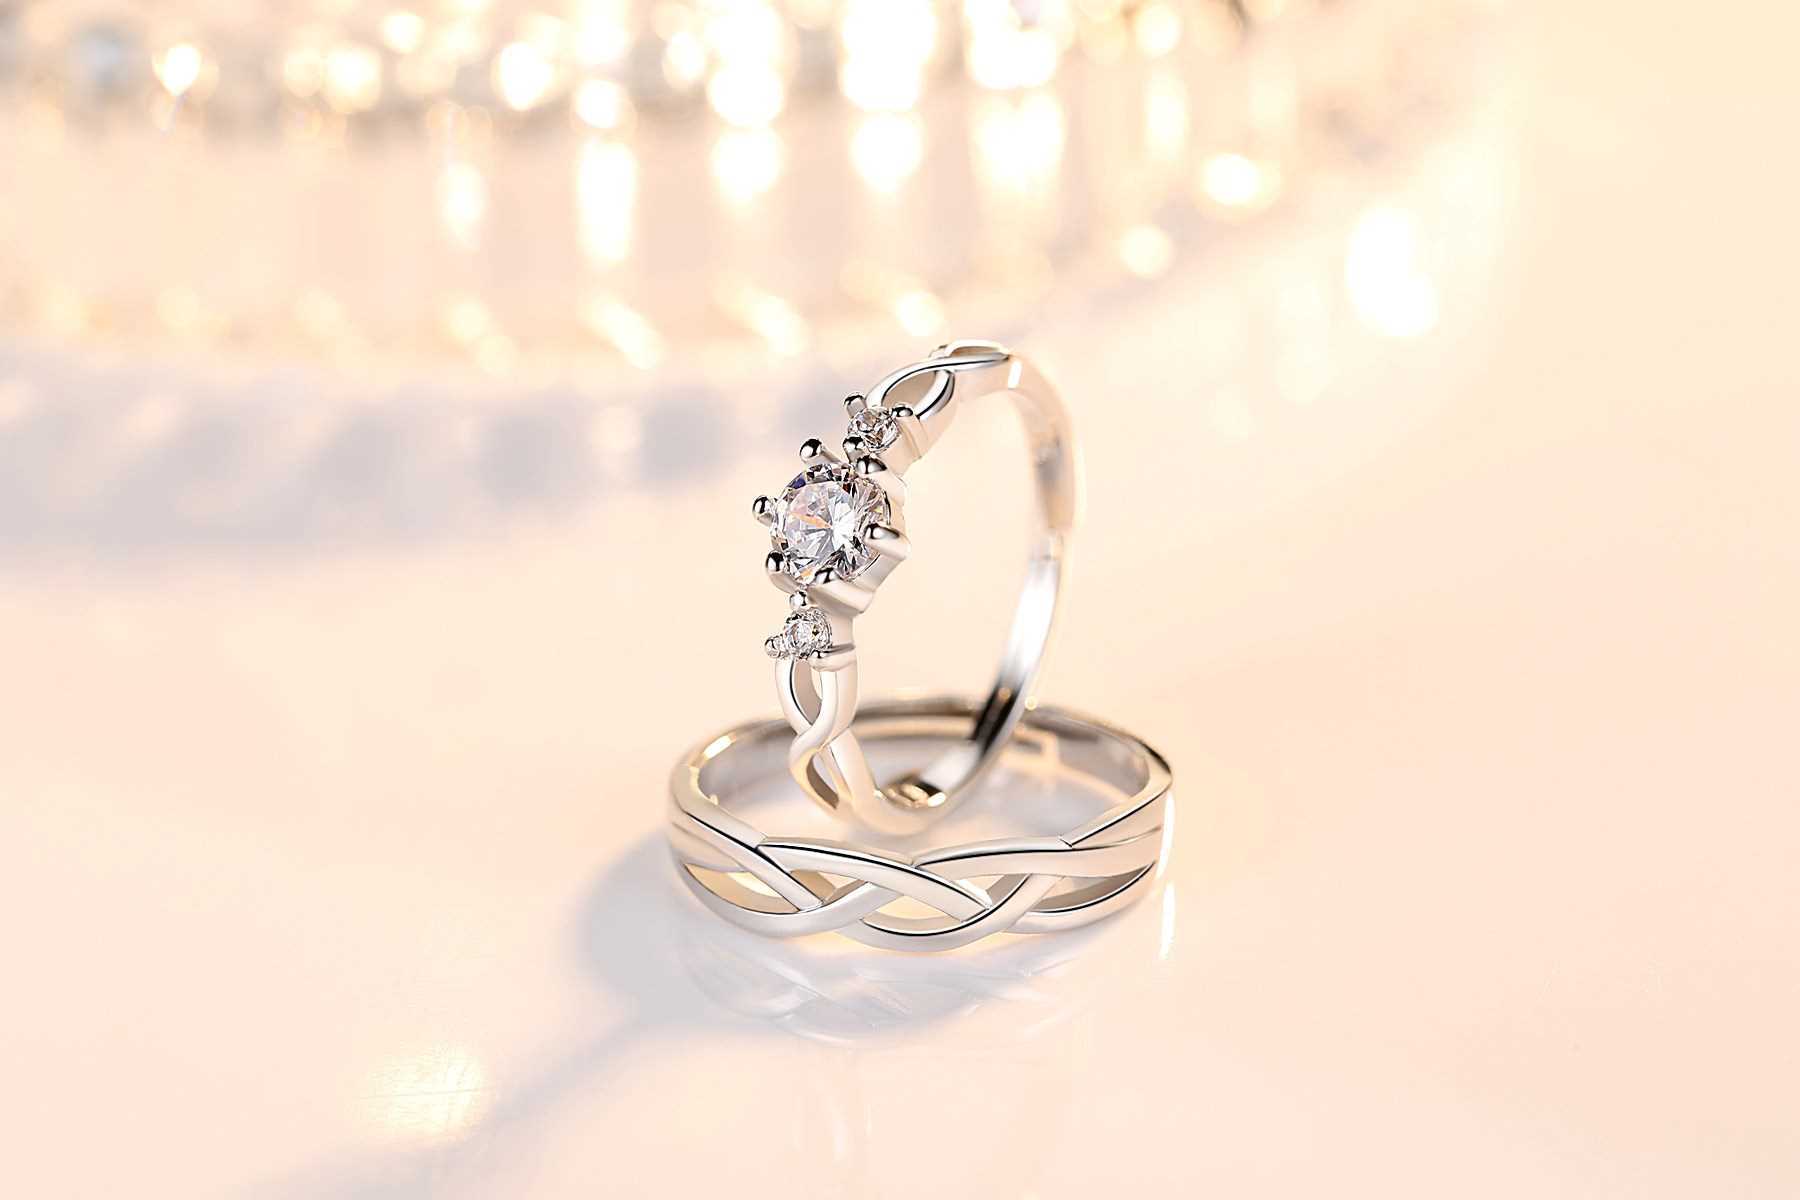 Cặp nhẫn Bạc Panmila - Nhẫn đôi tình yêu (TS-ND-A3)